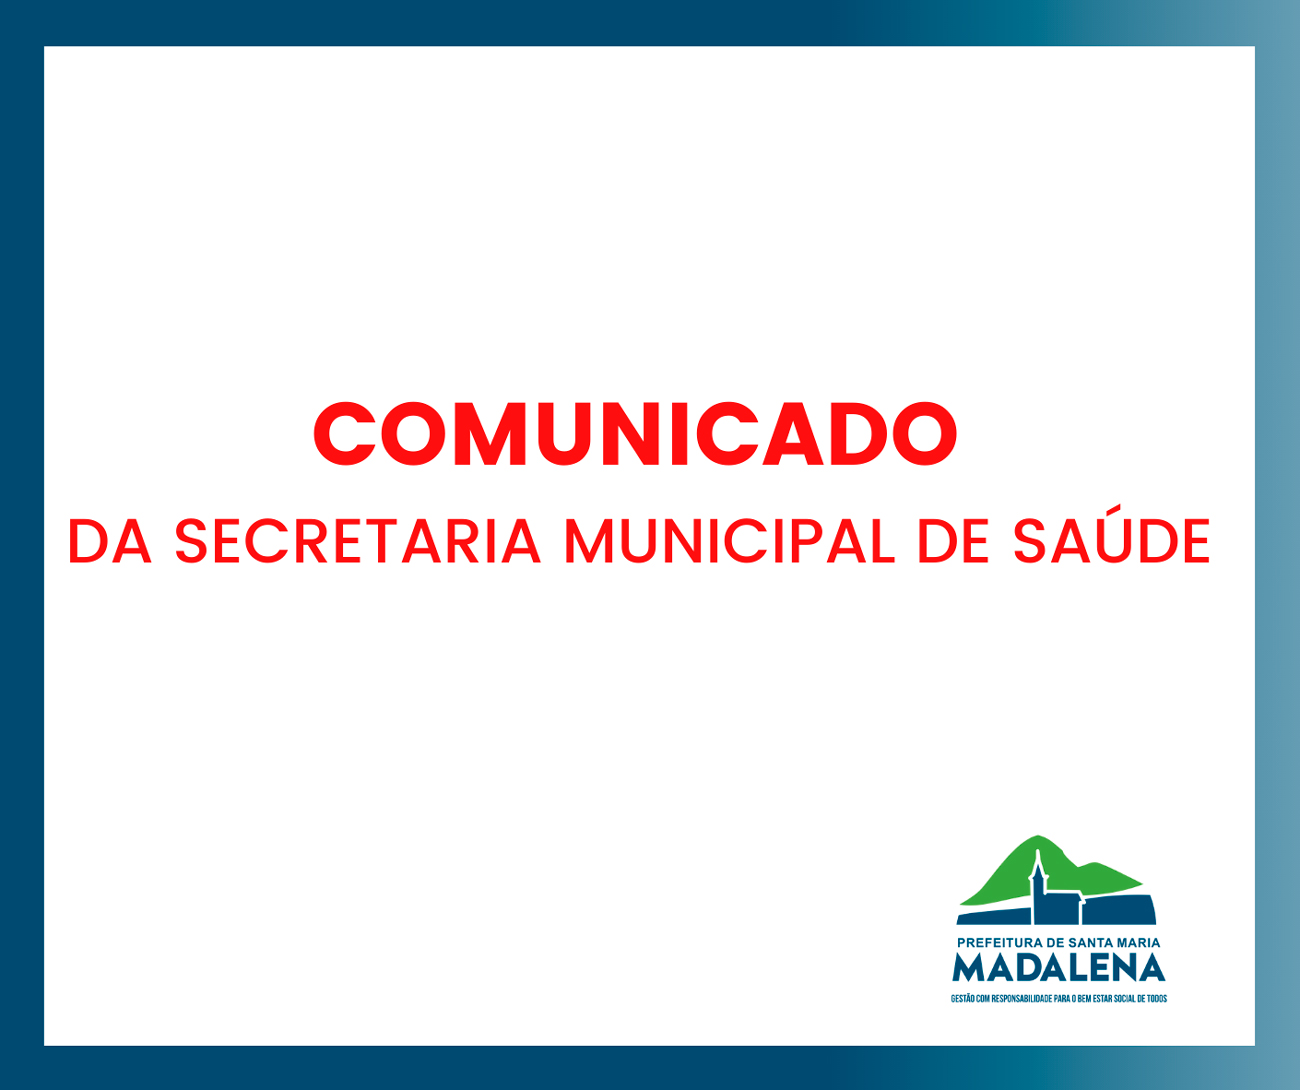 Comunicado da Secretaria Municipal de Saúde de Santa Maria Madalena